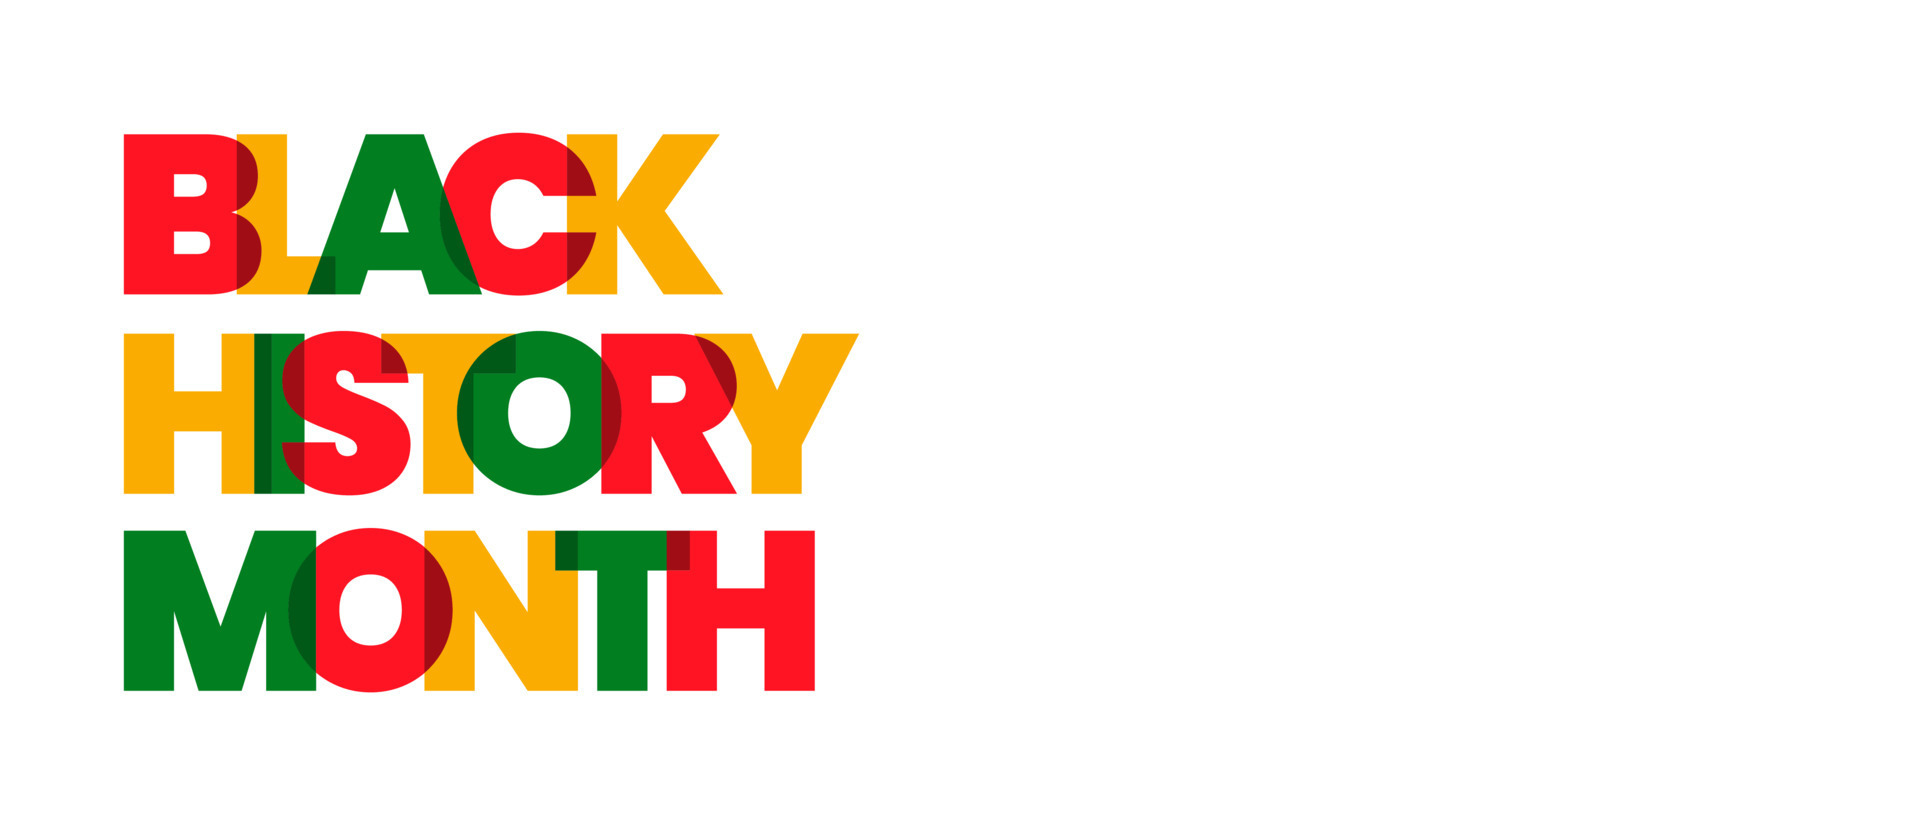 Tháng Lịch sử Người da đen là dịp để chúng ta tôn vinh và tìm hiểu thêm về những đóng góp và chiến thắng của người da đen trong lịch sử. Hãy cùng xem hình ảnh về những biểu tượng và sự kiện quan trọng trong lịch sử Người da đen, để hiểu thêm về một phần quan trọng của lịch sử nhân loại.